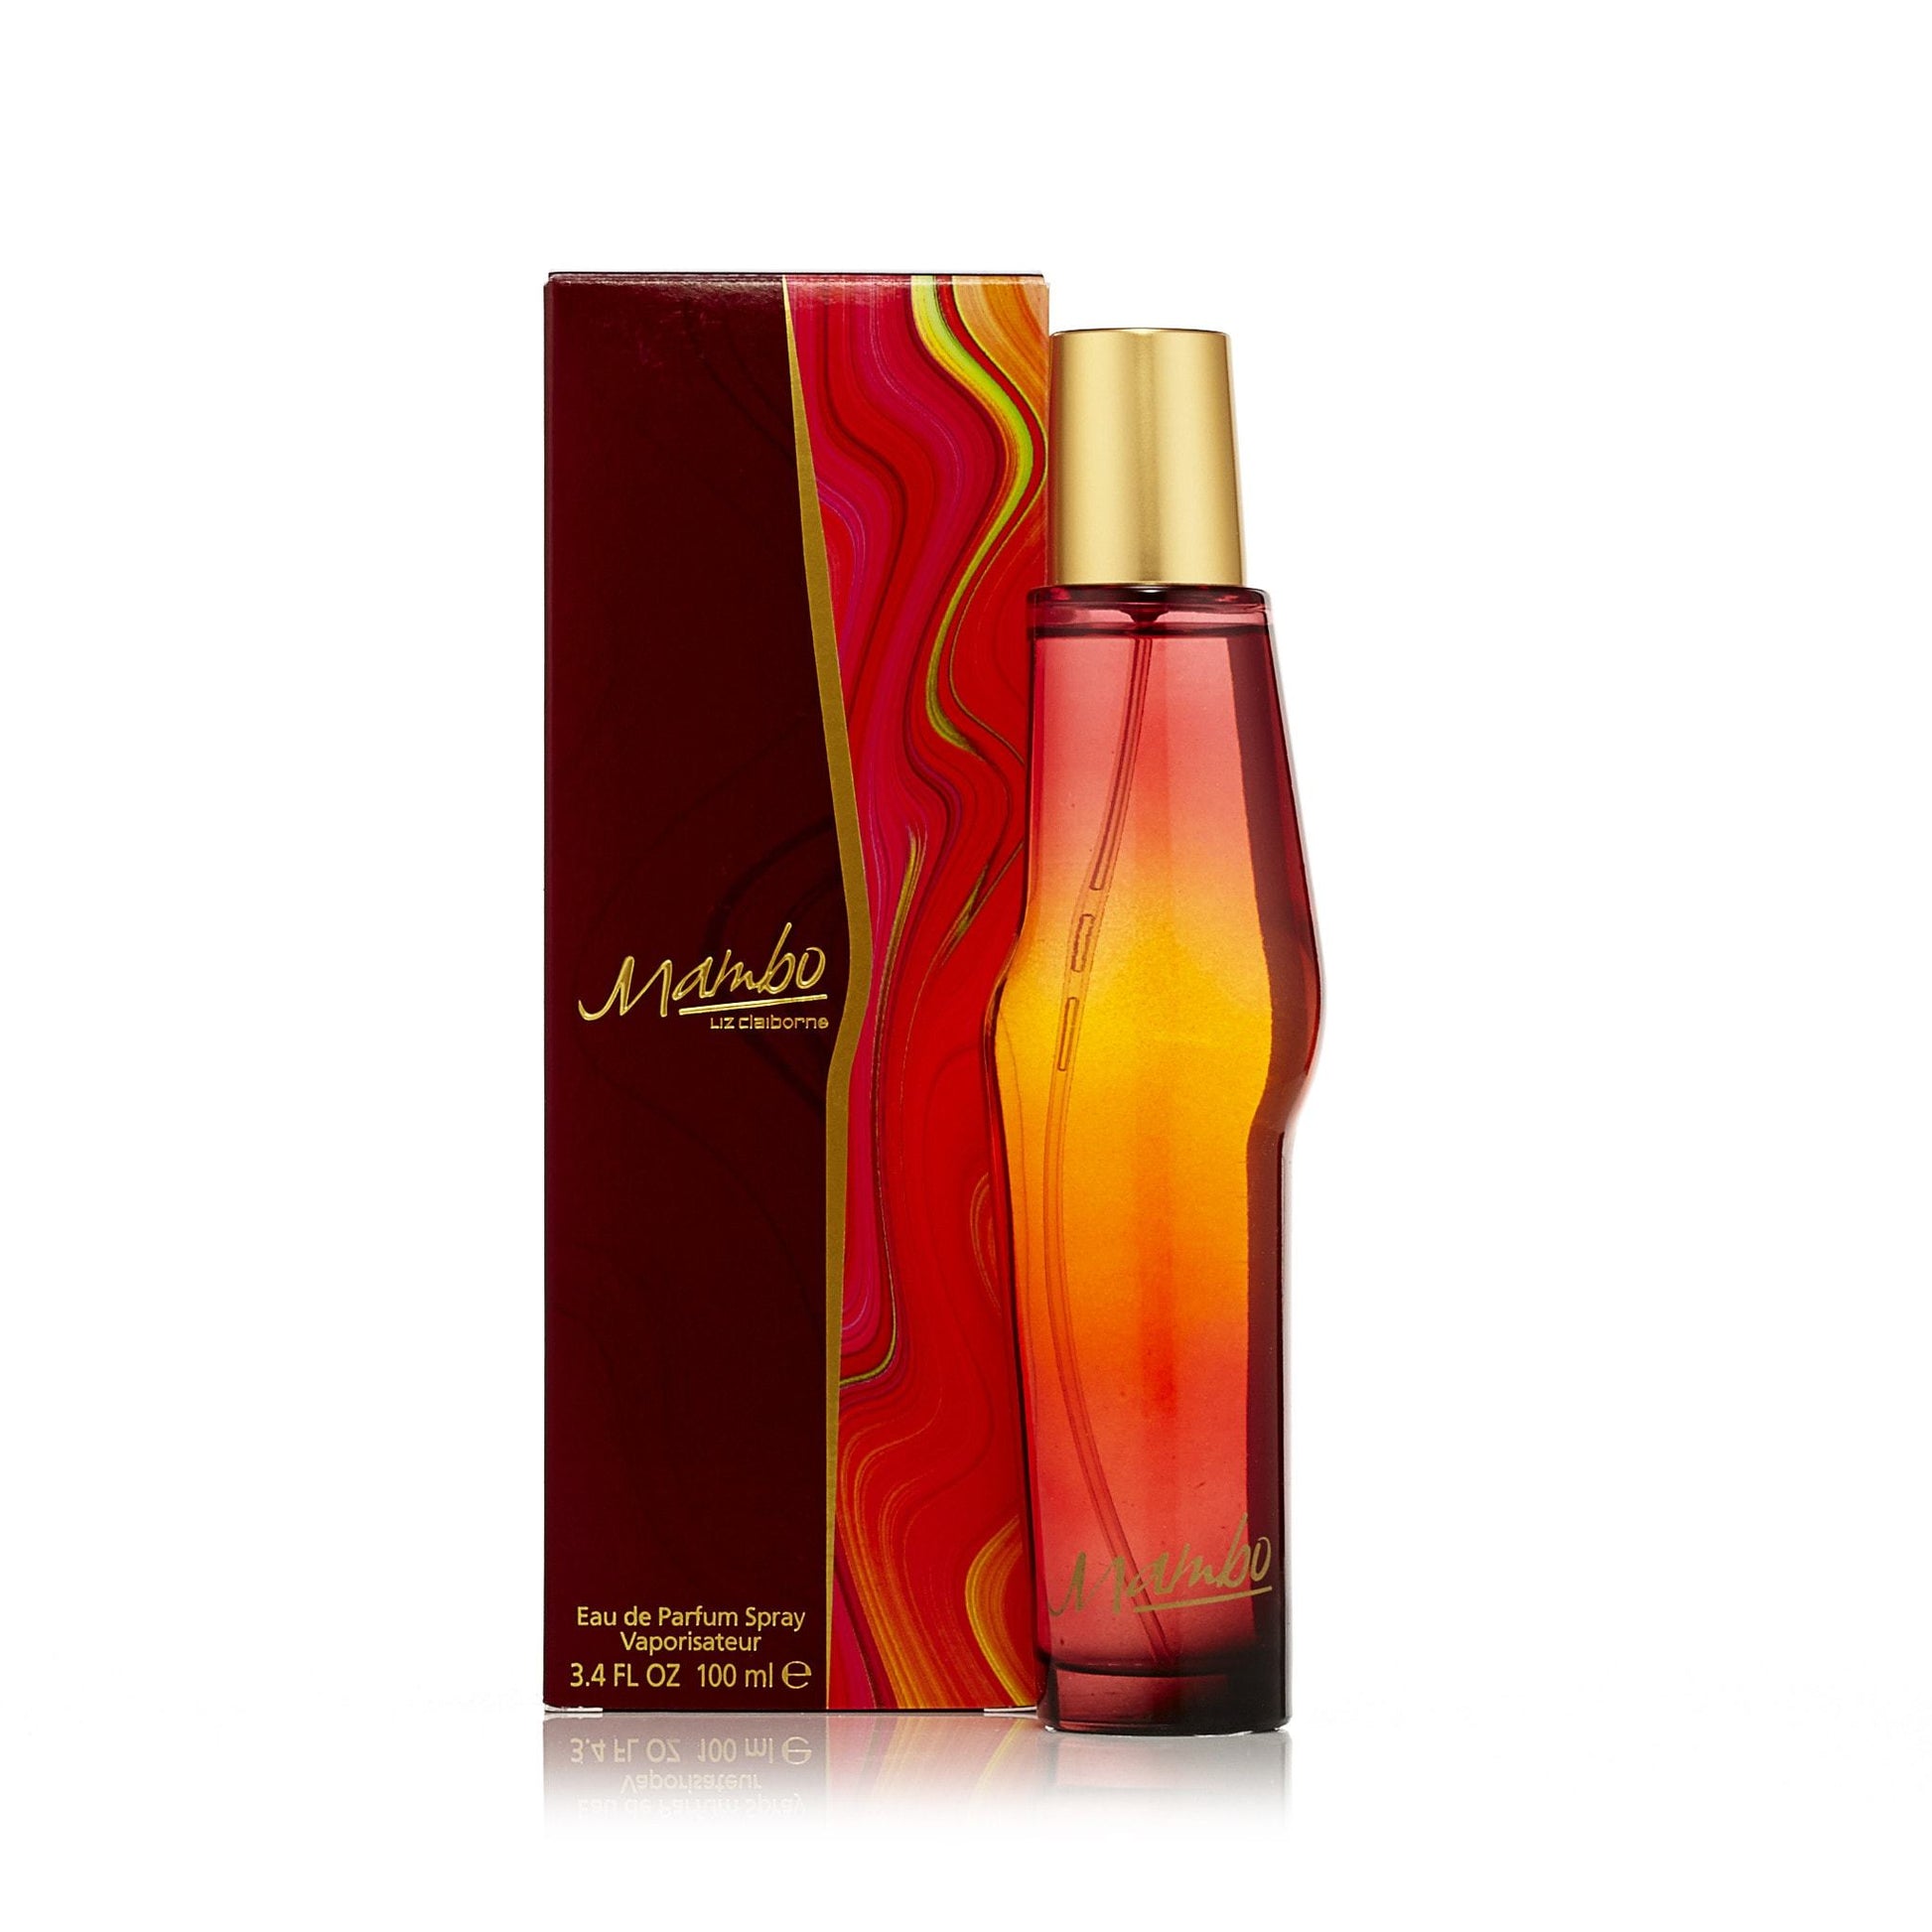 Mambo Eau de Parfum Spray for Women by Claiborne, Product image 2